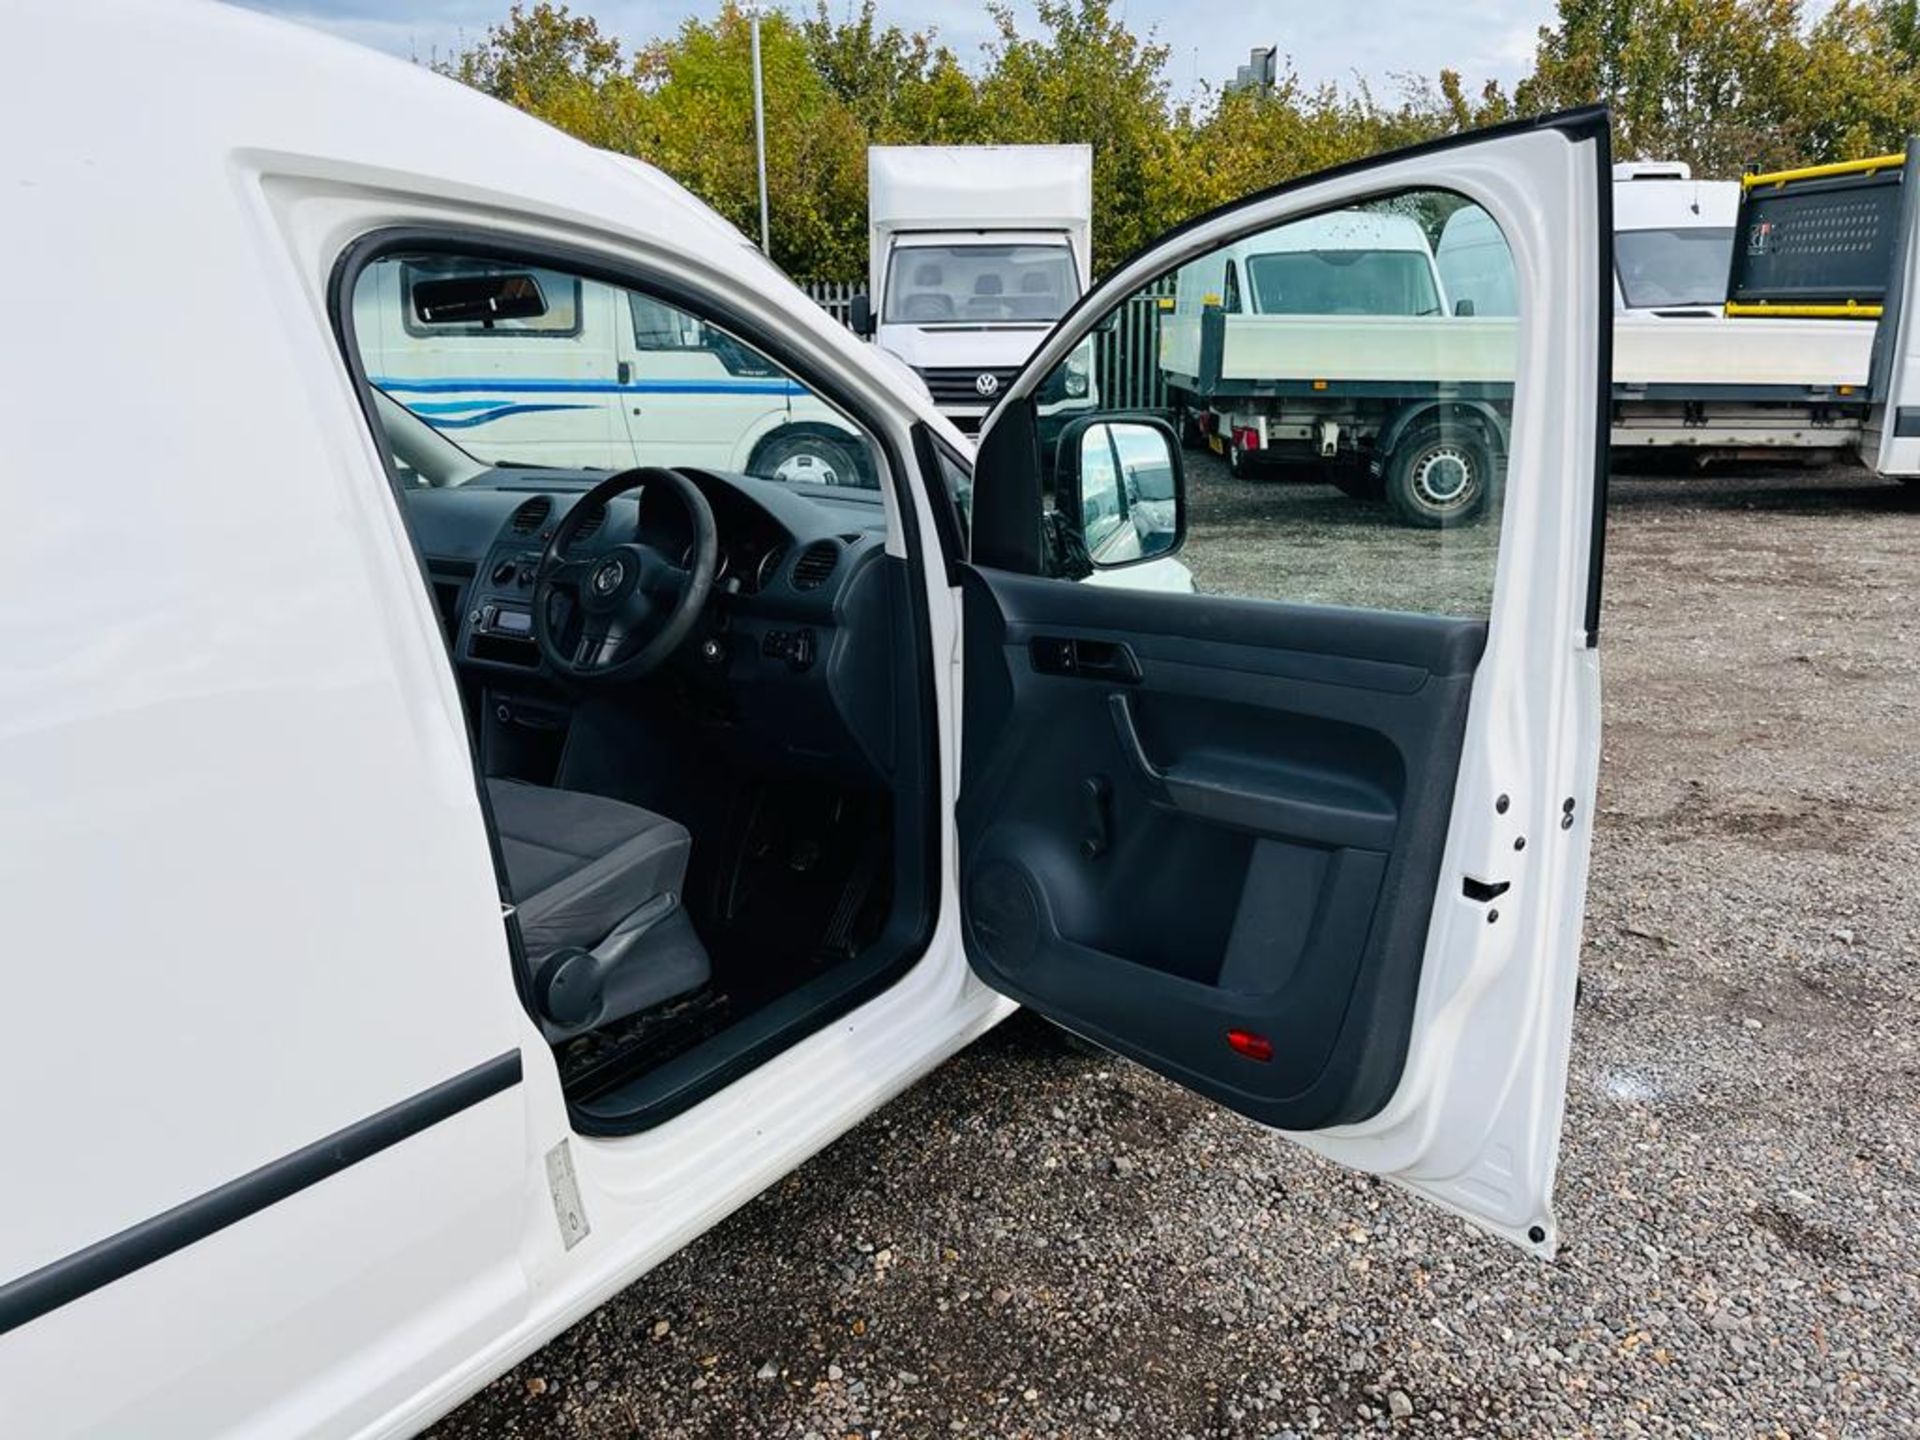 ** ON SALE ** Volkswagen Caddy C20 1.6 Tdi 75 Startline Van 2015 "15 Reg" - Bluetooth Handsfree - Image 3 of 26